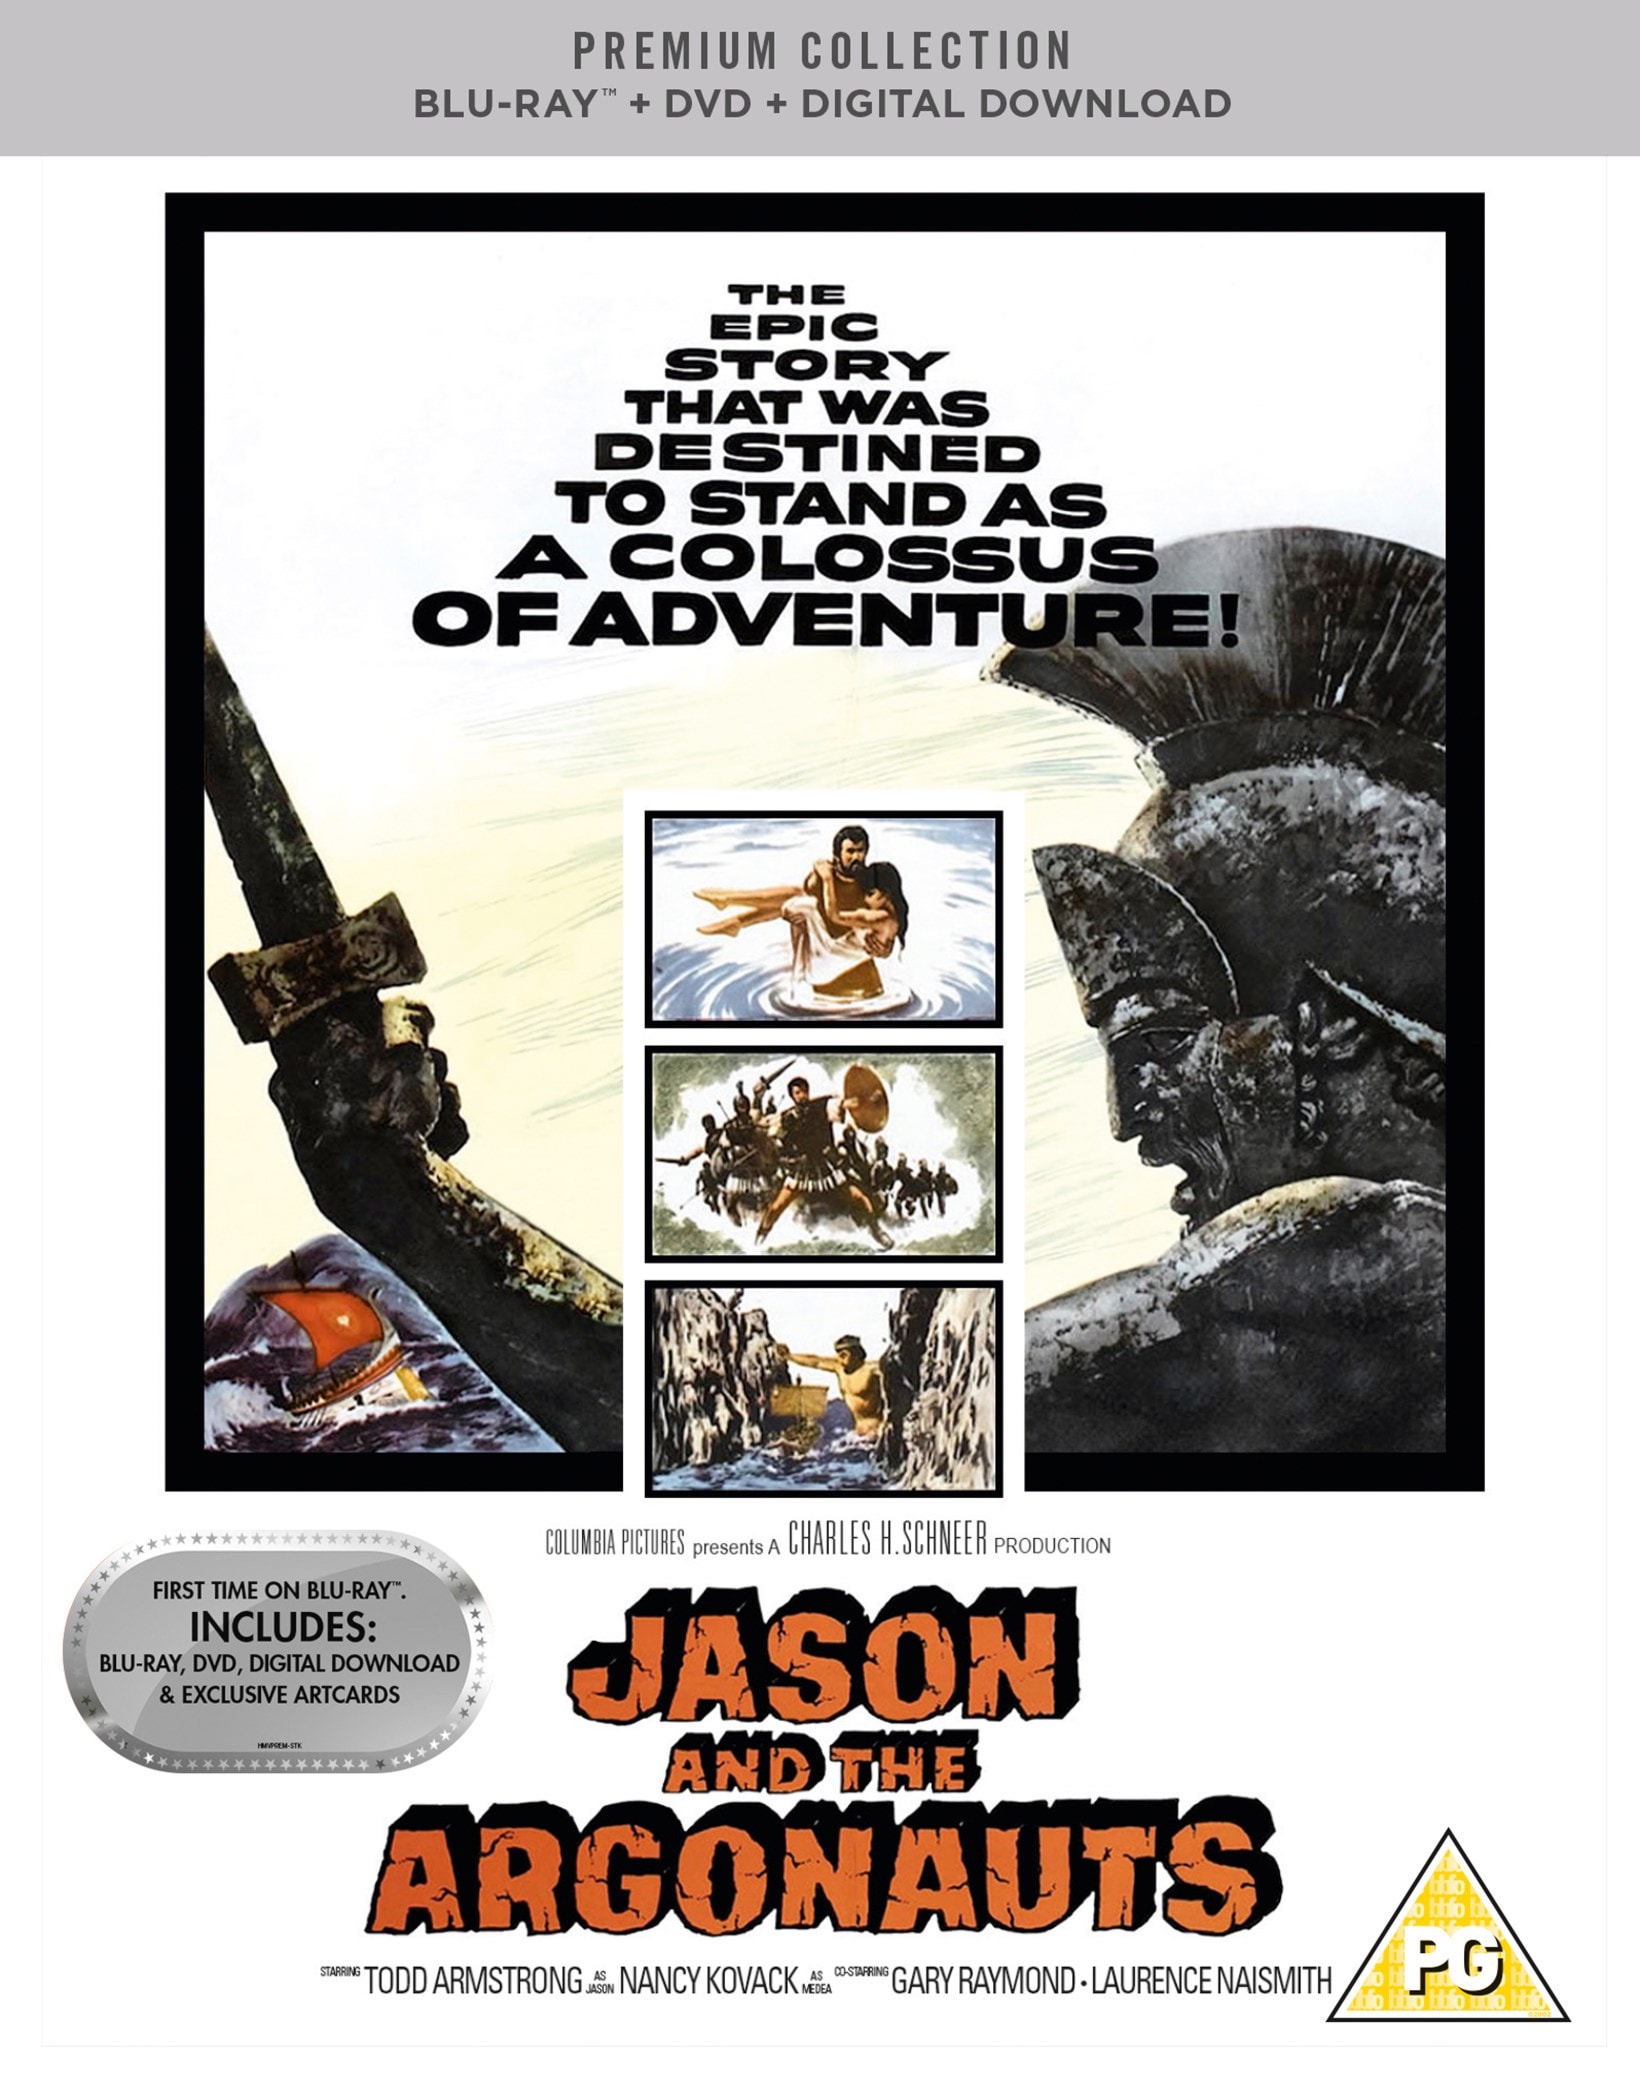 Jason and the Argonauts - Staff Pick